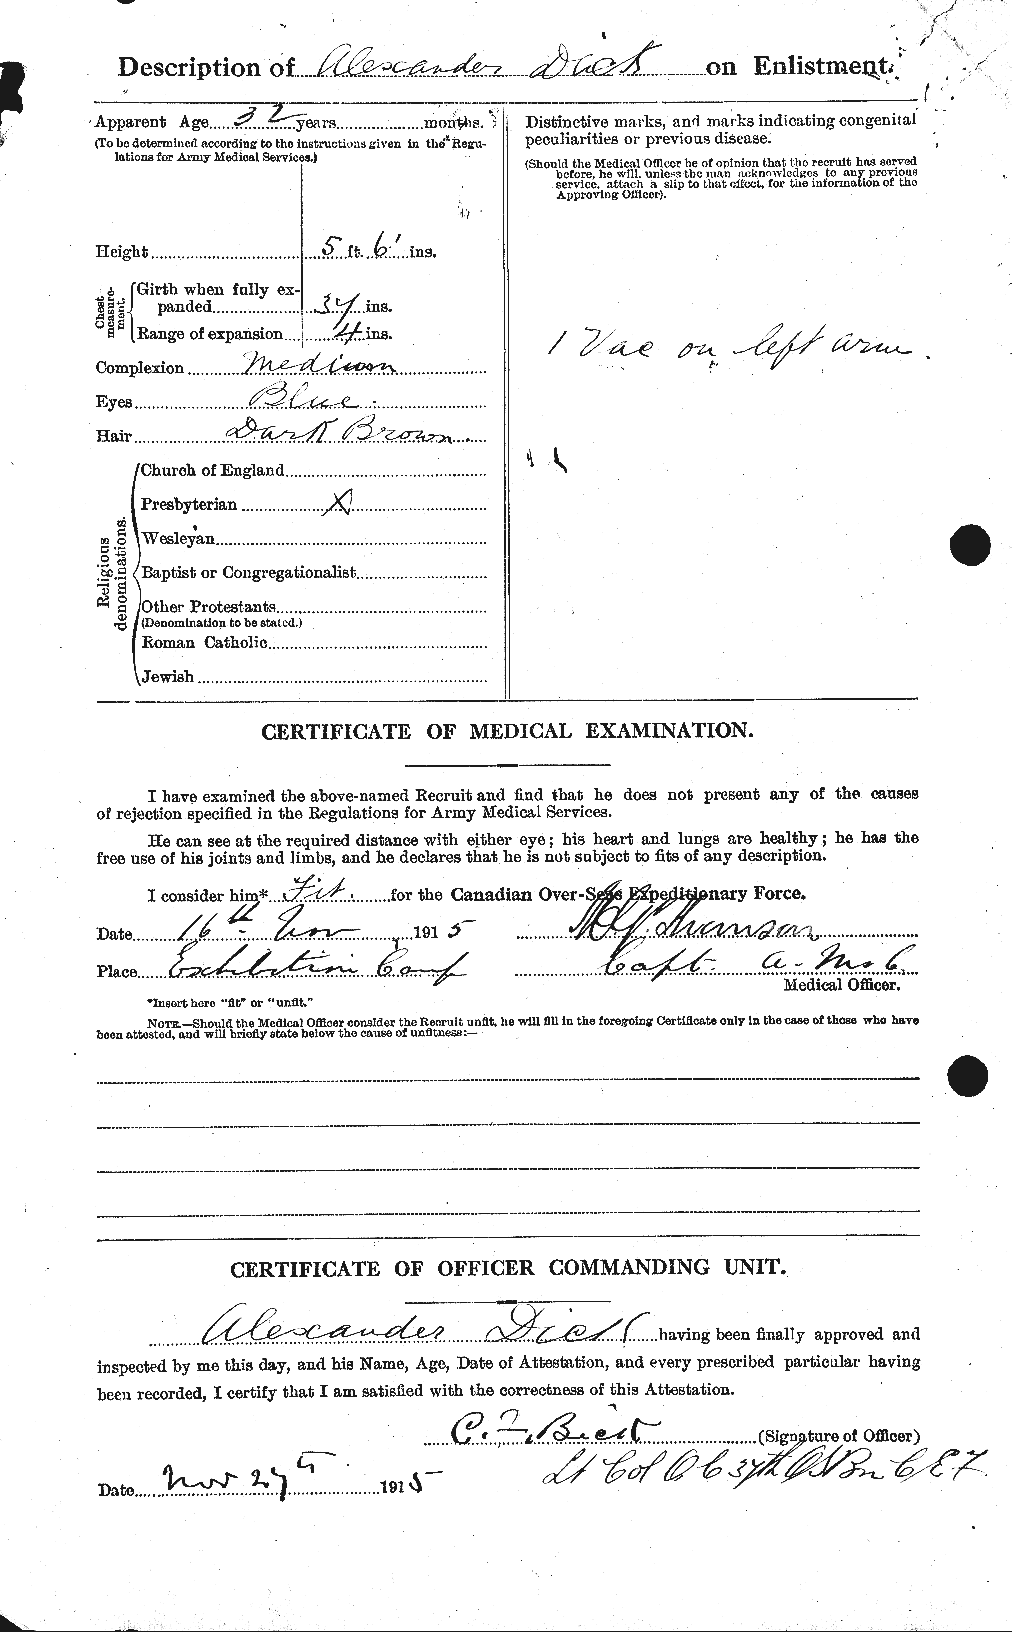 Dossiers du Personnel de la Première Guerre mondiale - CEC 294019b